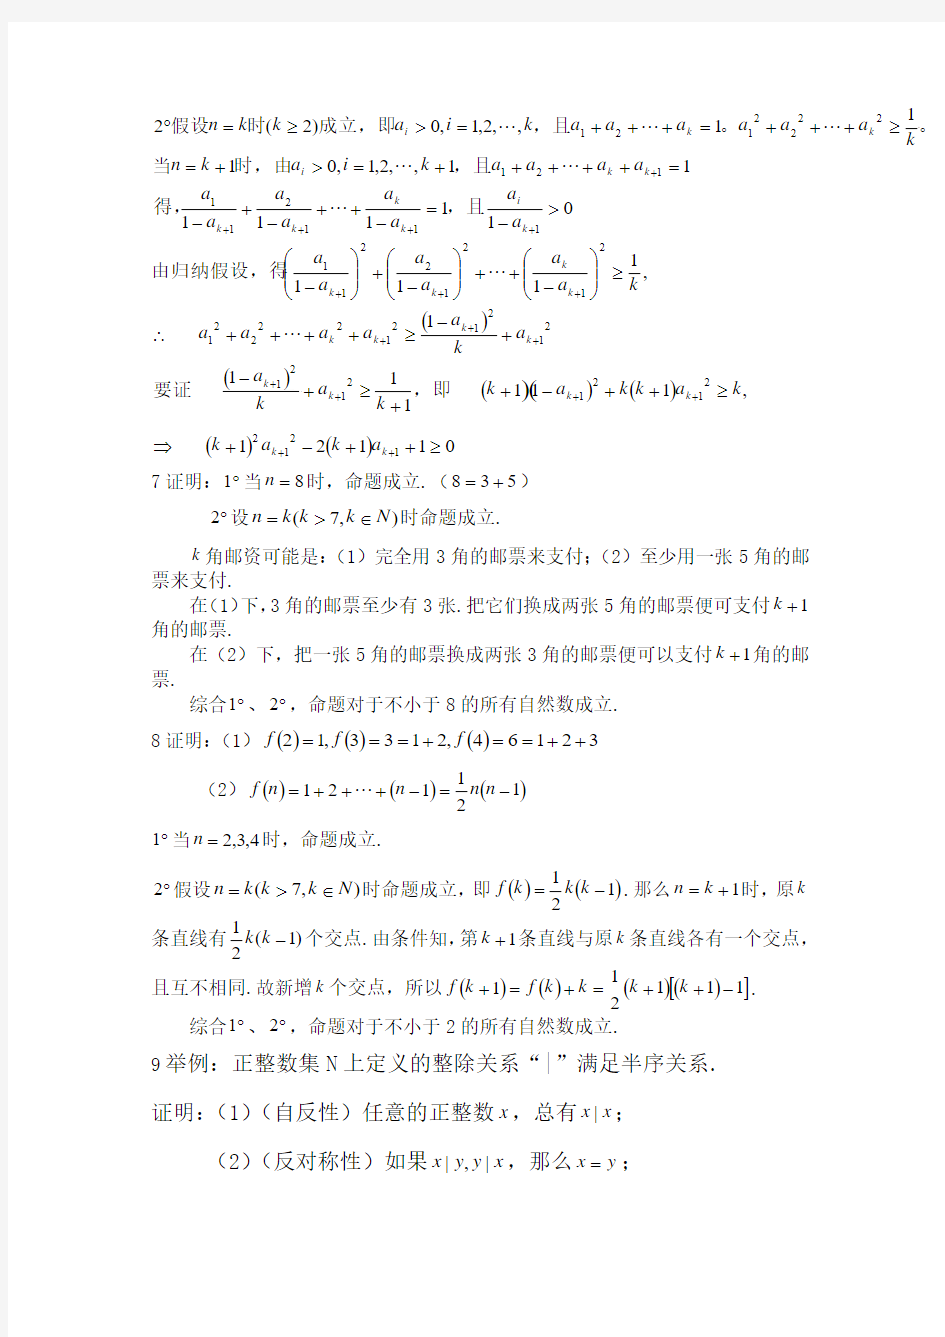 初等数学研究(程晓亮刘影)版课后习题答案